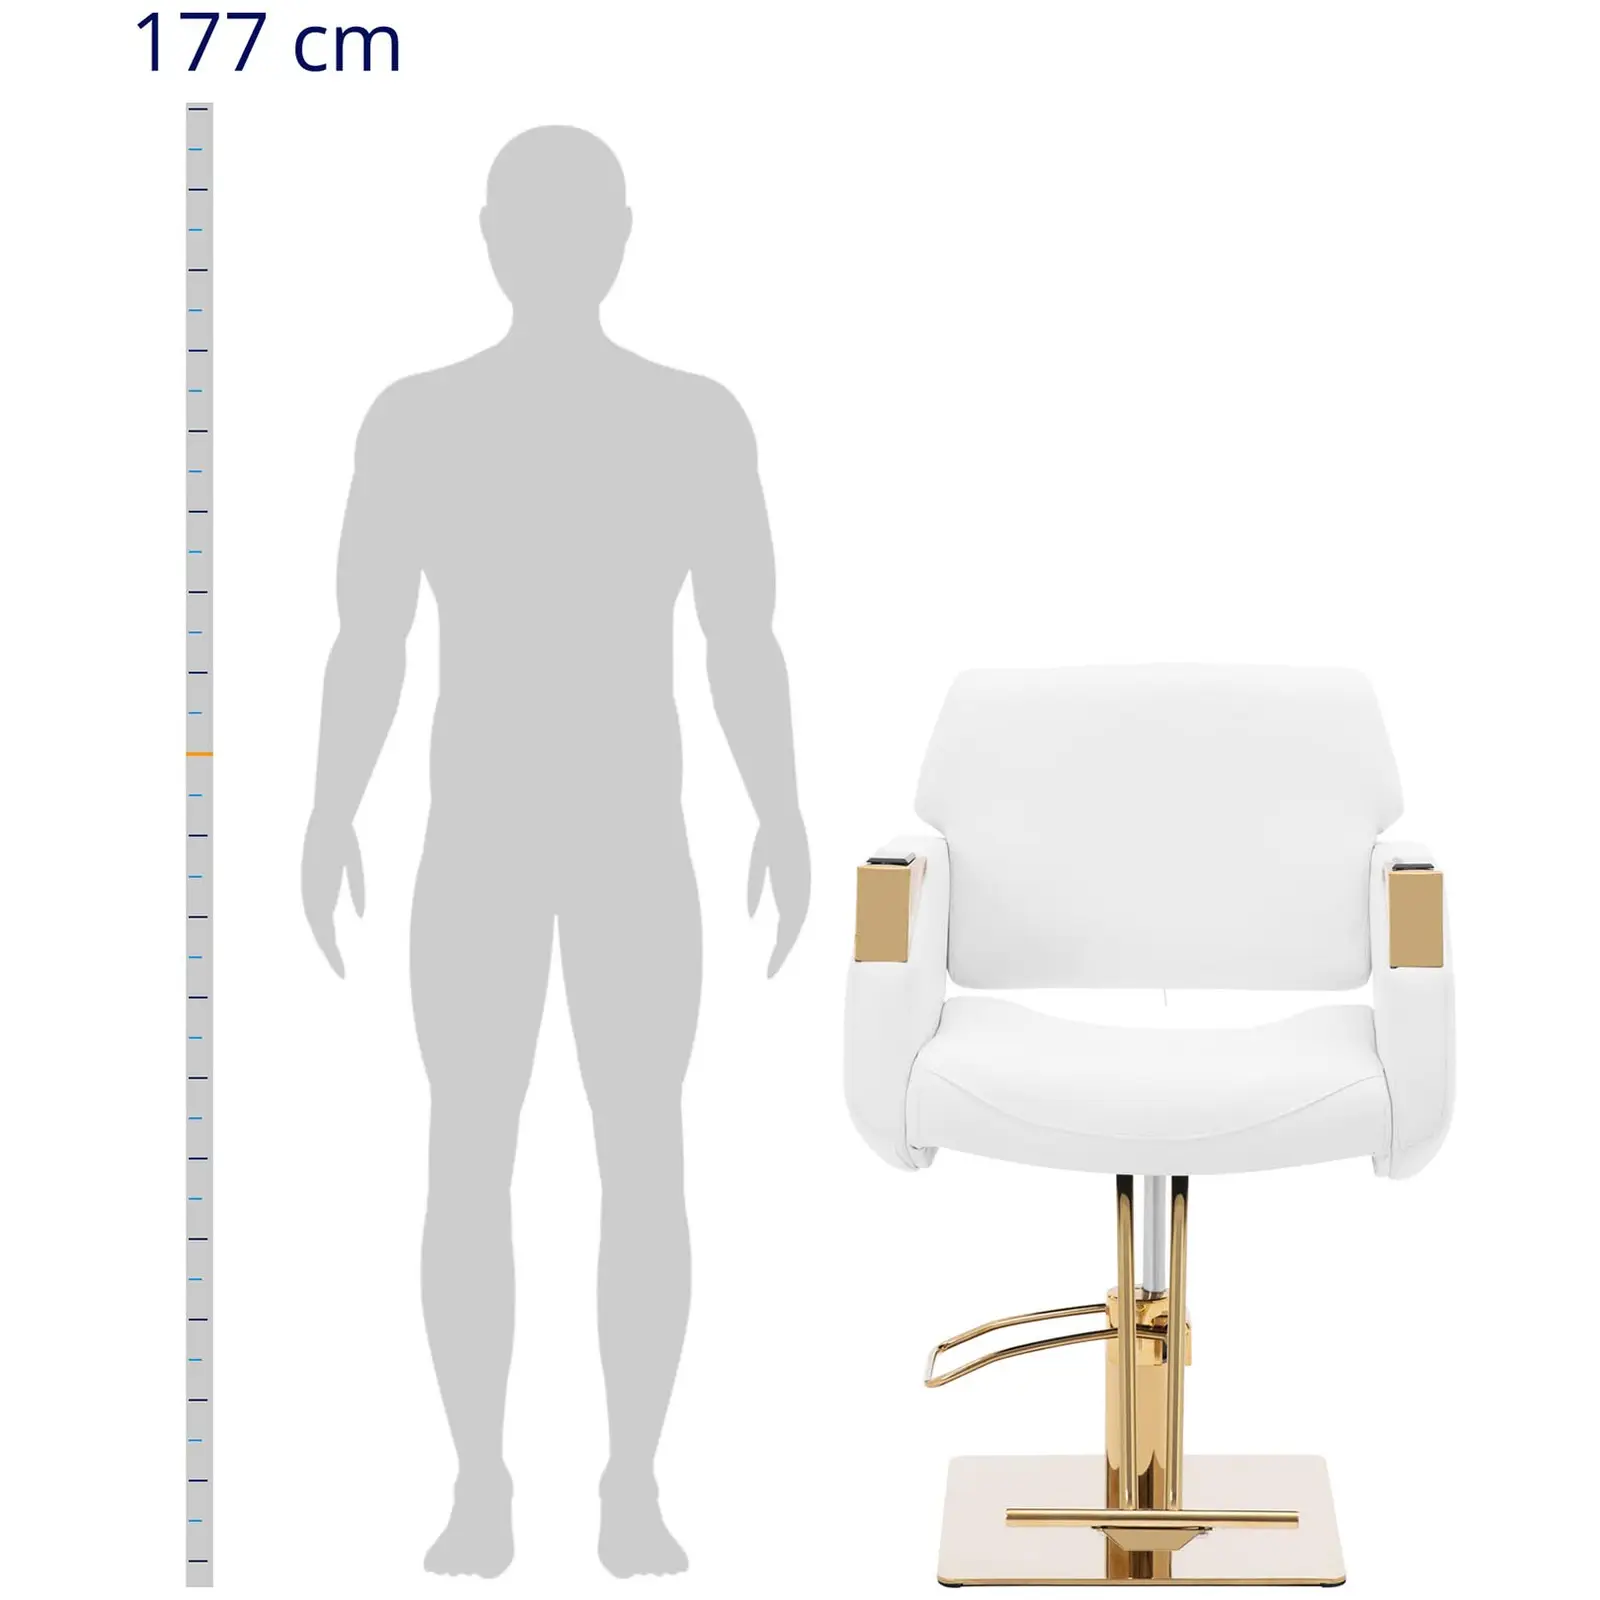 Салонен стол с поставка за крака - 880 - 1030 мм - 200 кг - бял / златен